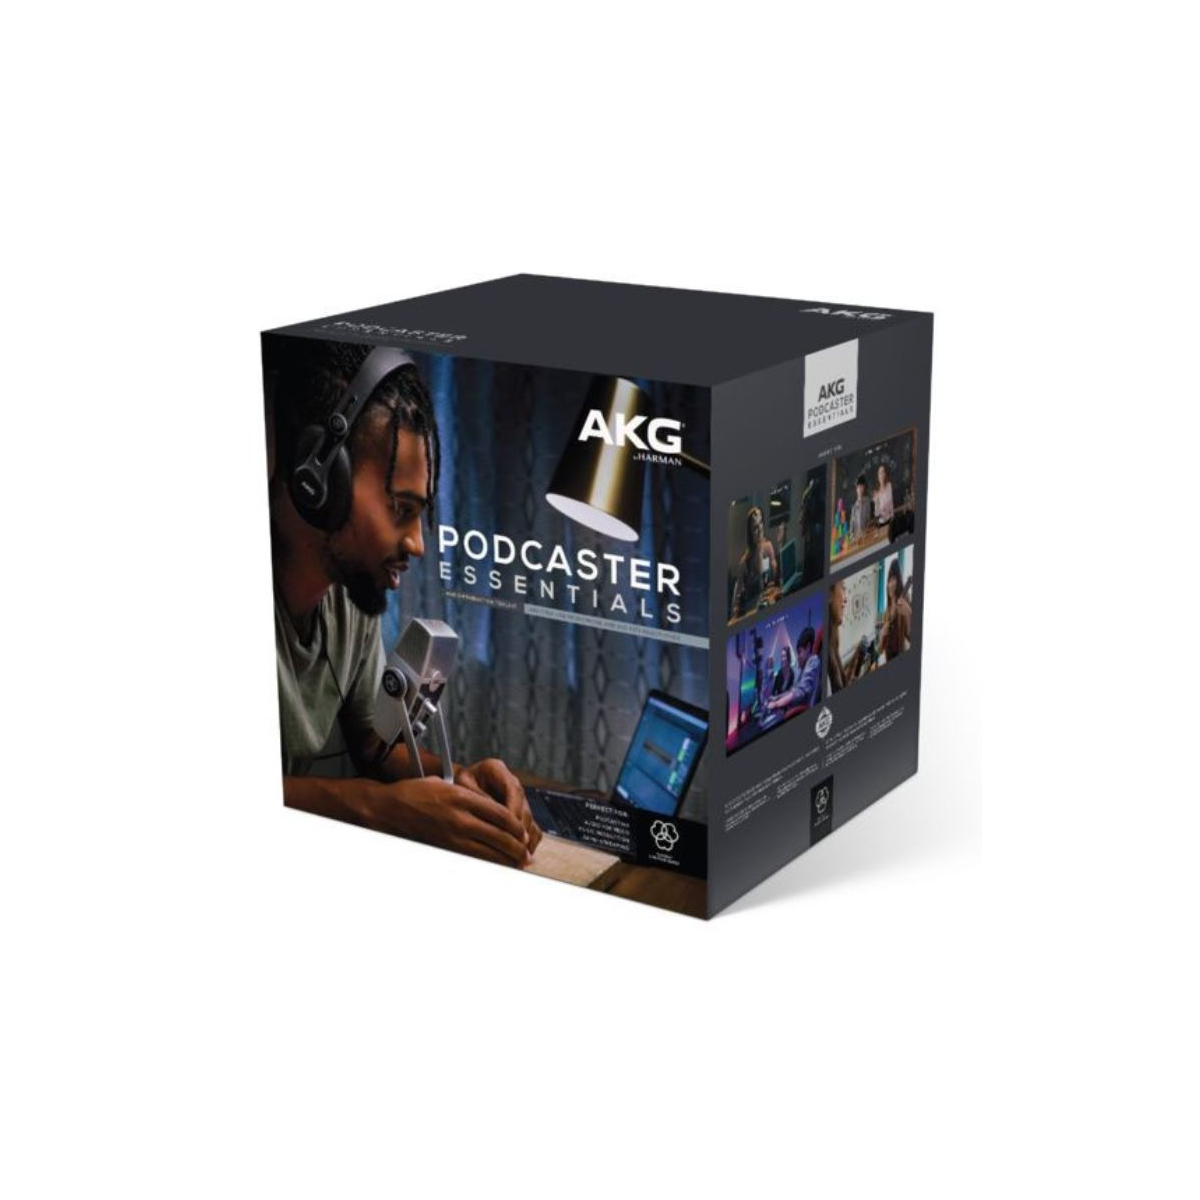 Packs Home Studio - AKG - Podcaster Essentials Bundle